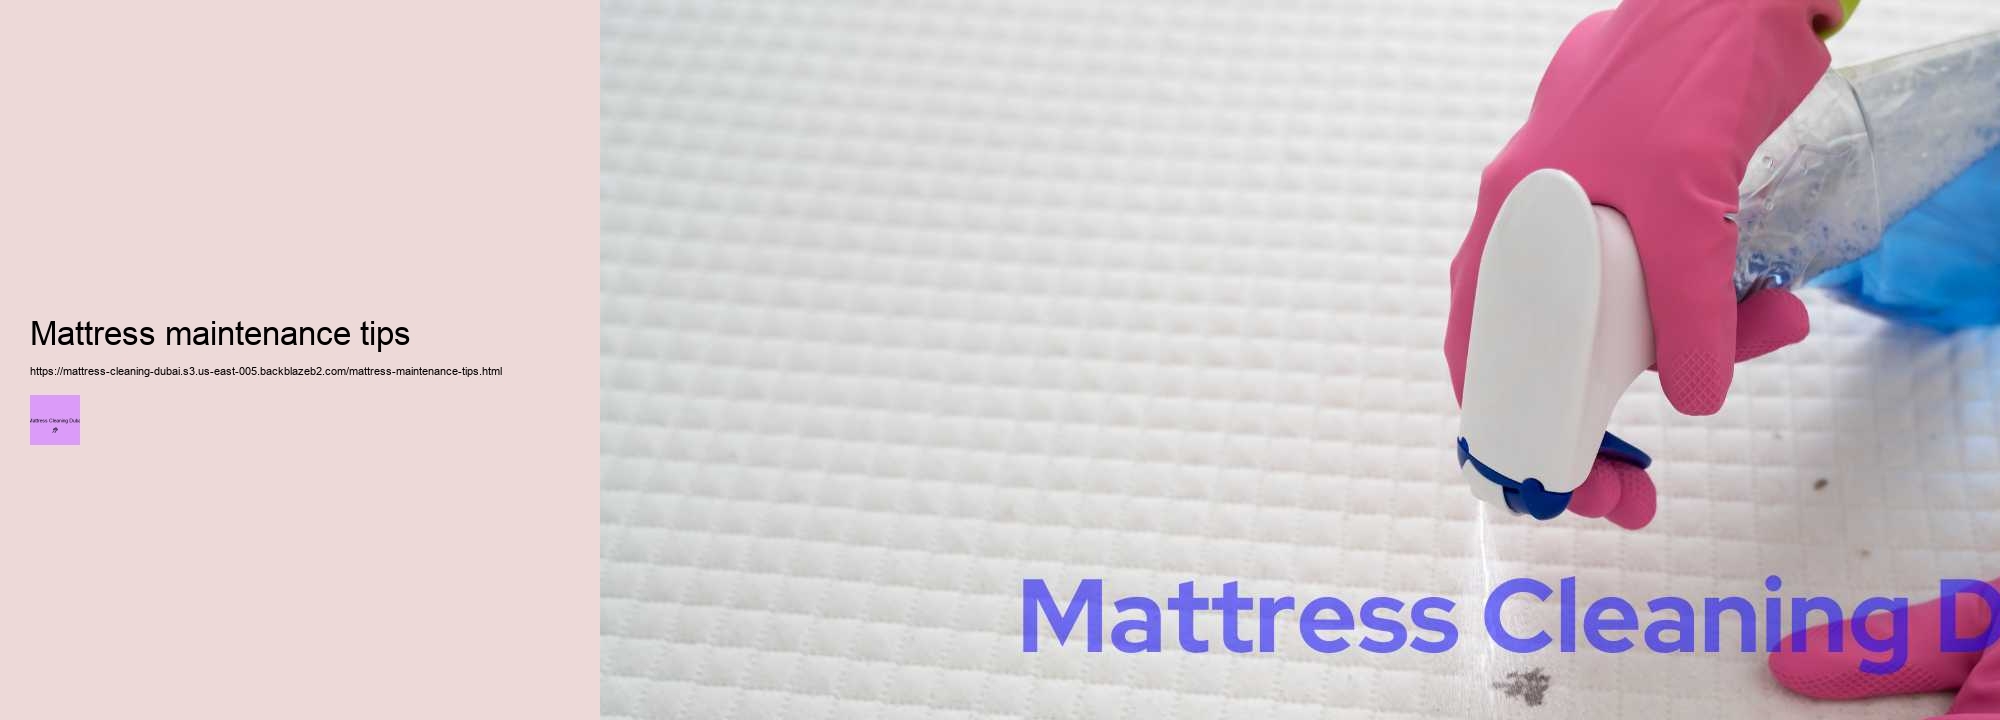 Mattress maintenance tips